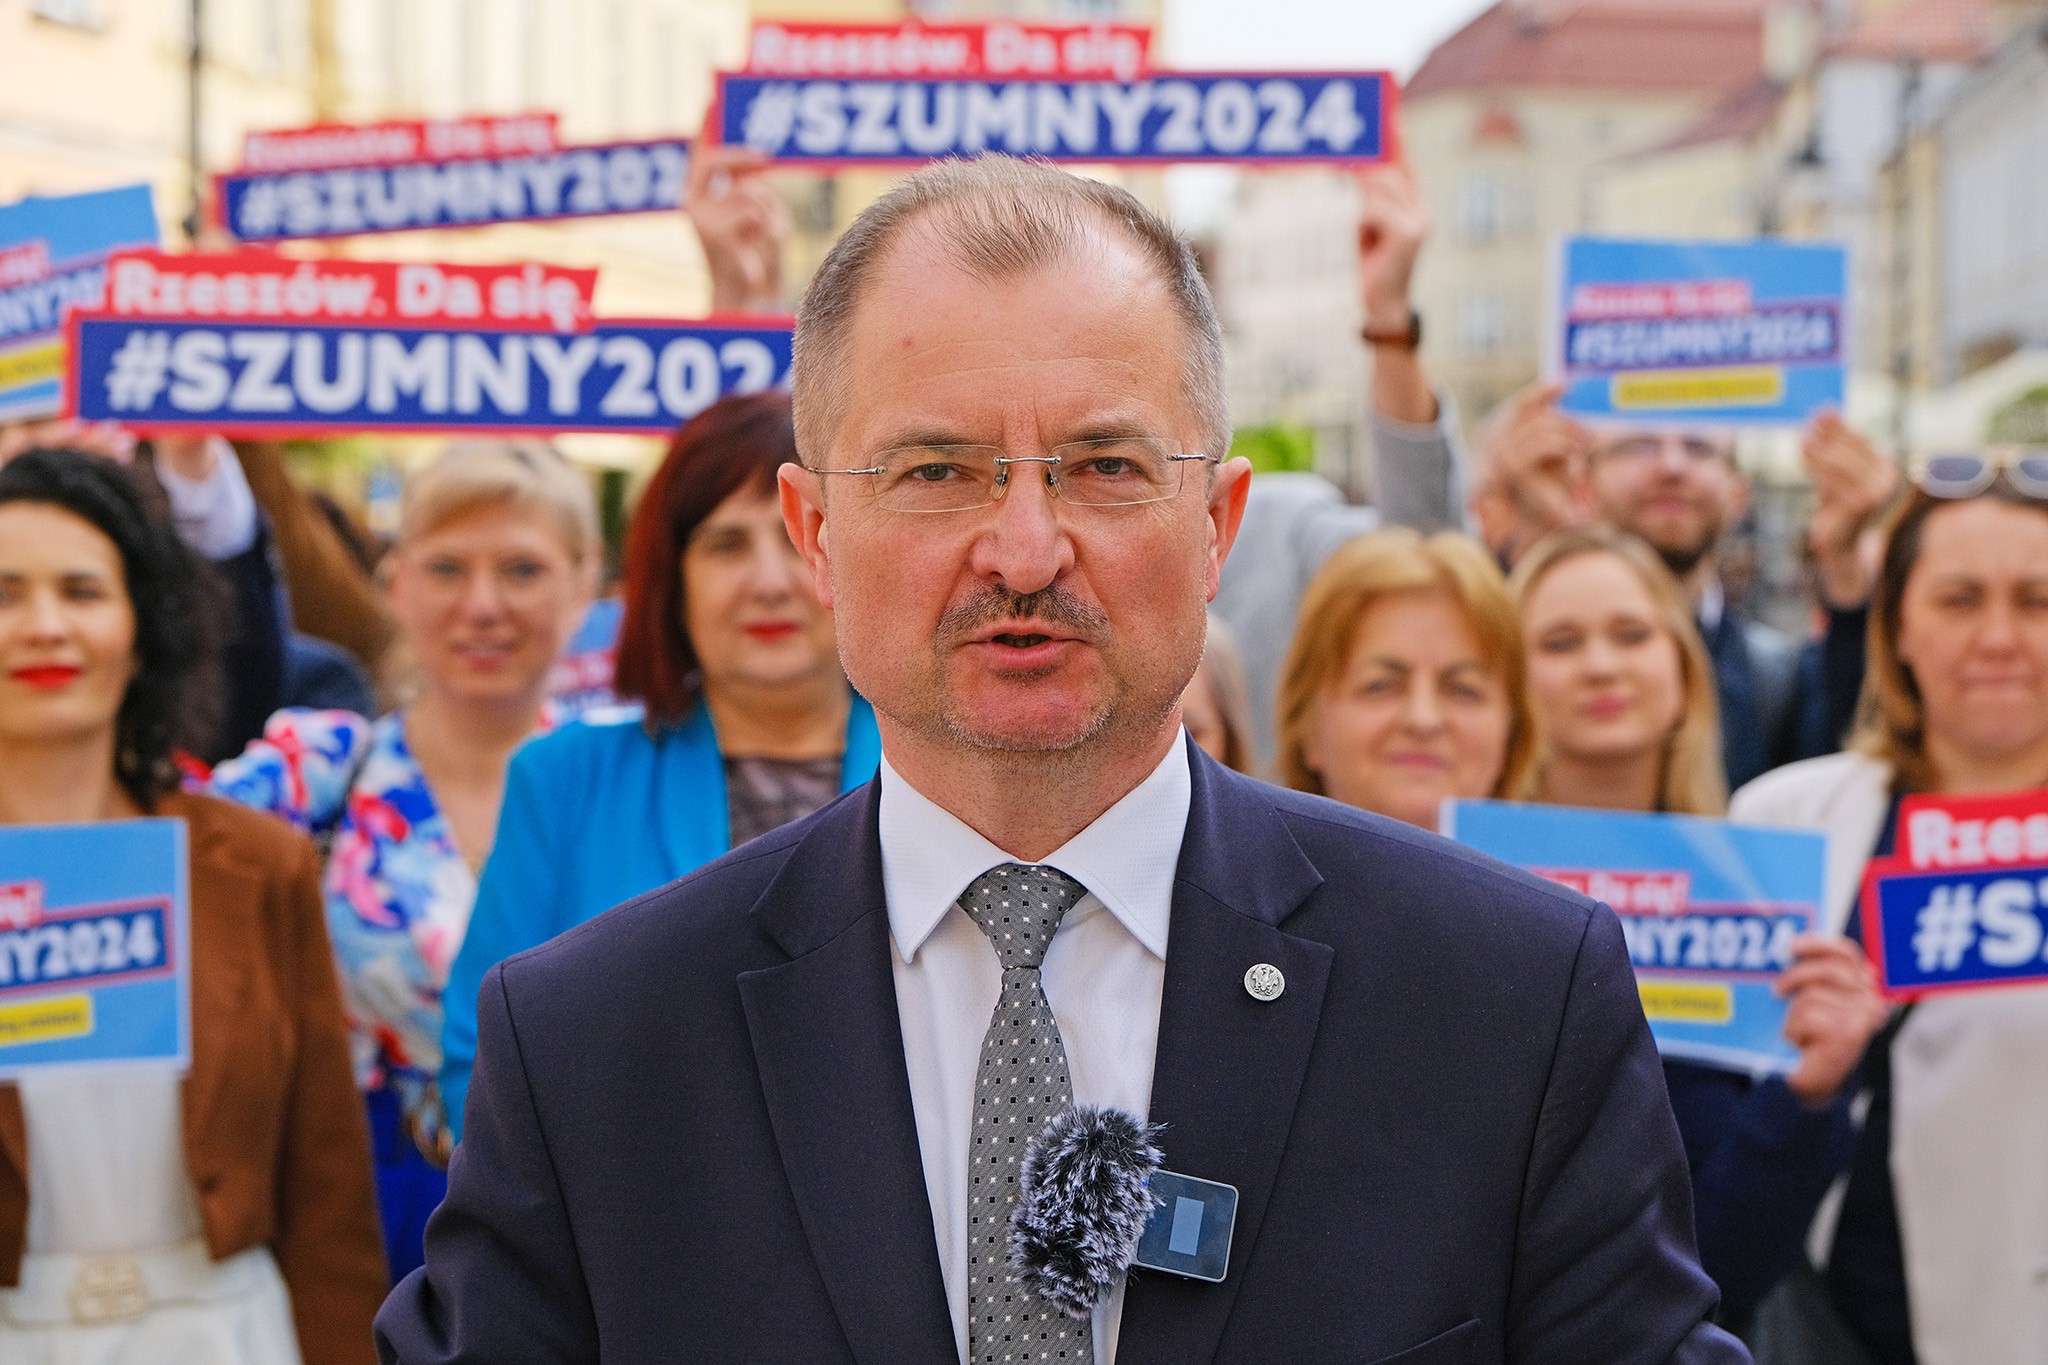 Elecciones 2024. Waldemar Szumny: Introduciré el transporte público gratuito